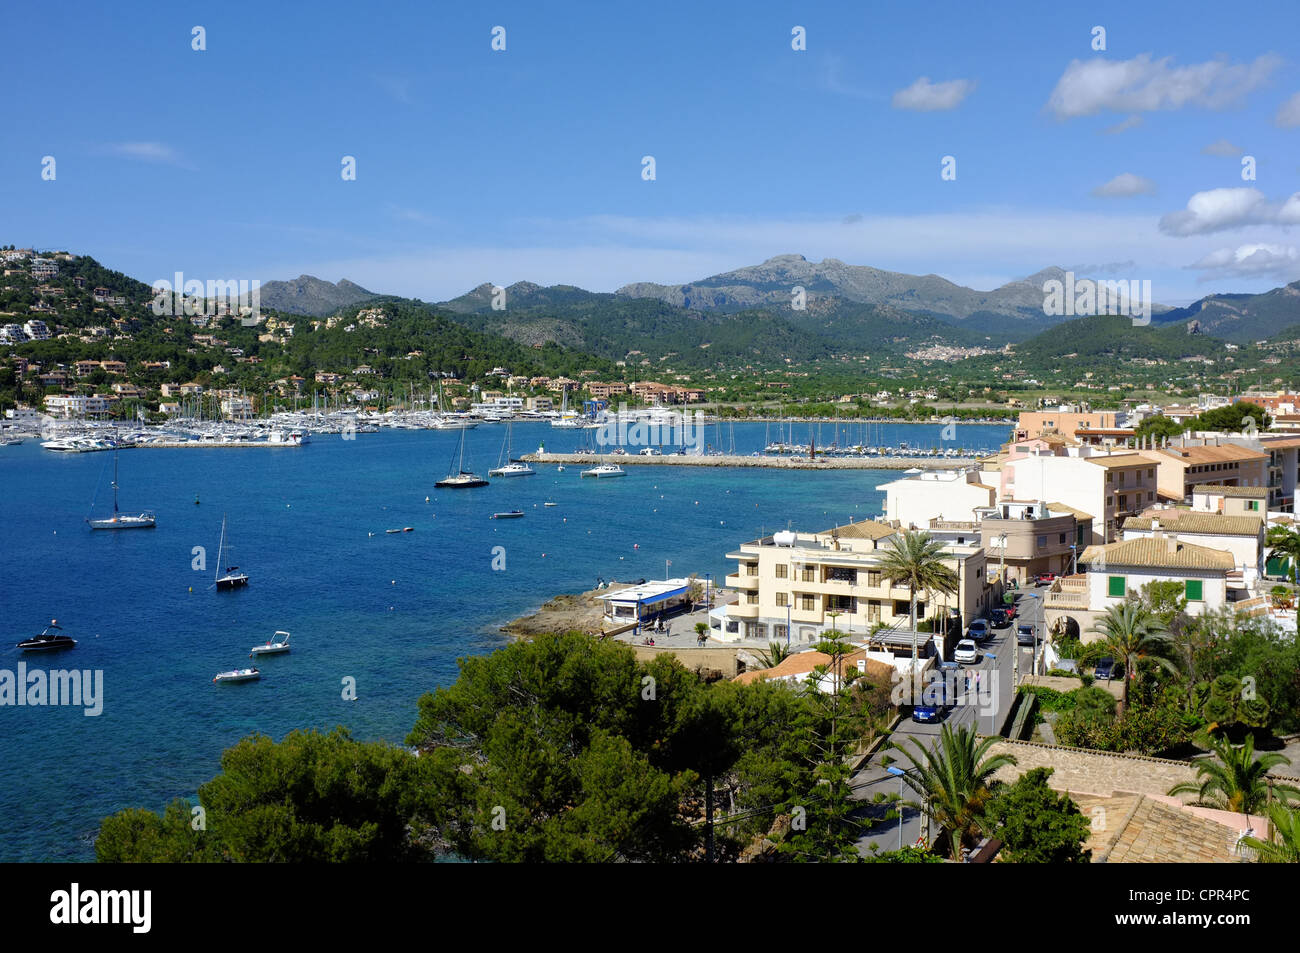 Port Andratx, Mallorca (Majorca) Stock Photo